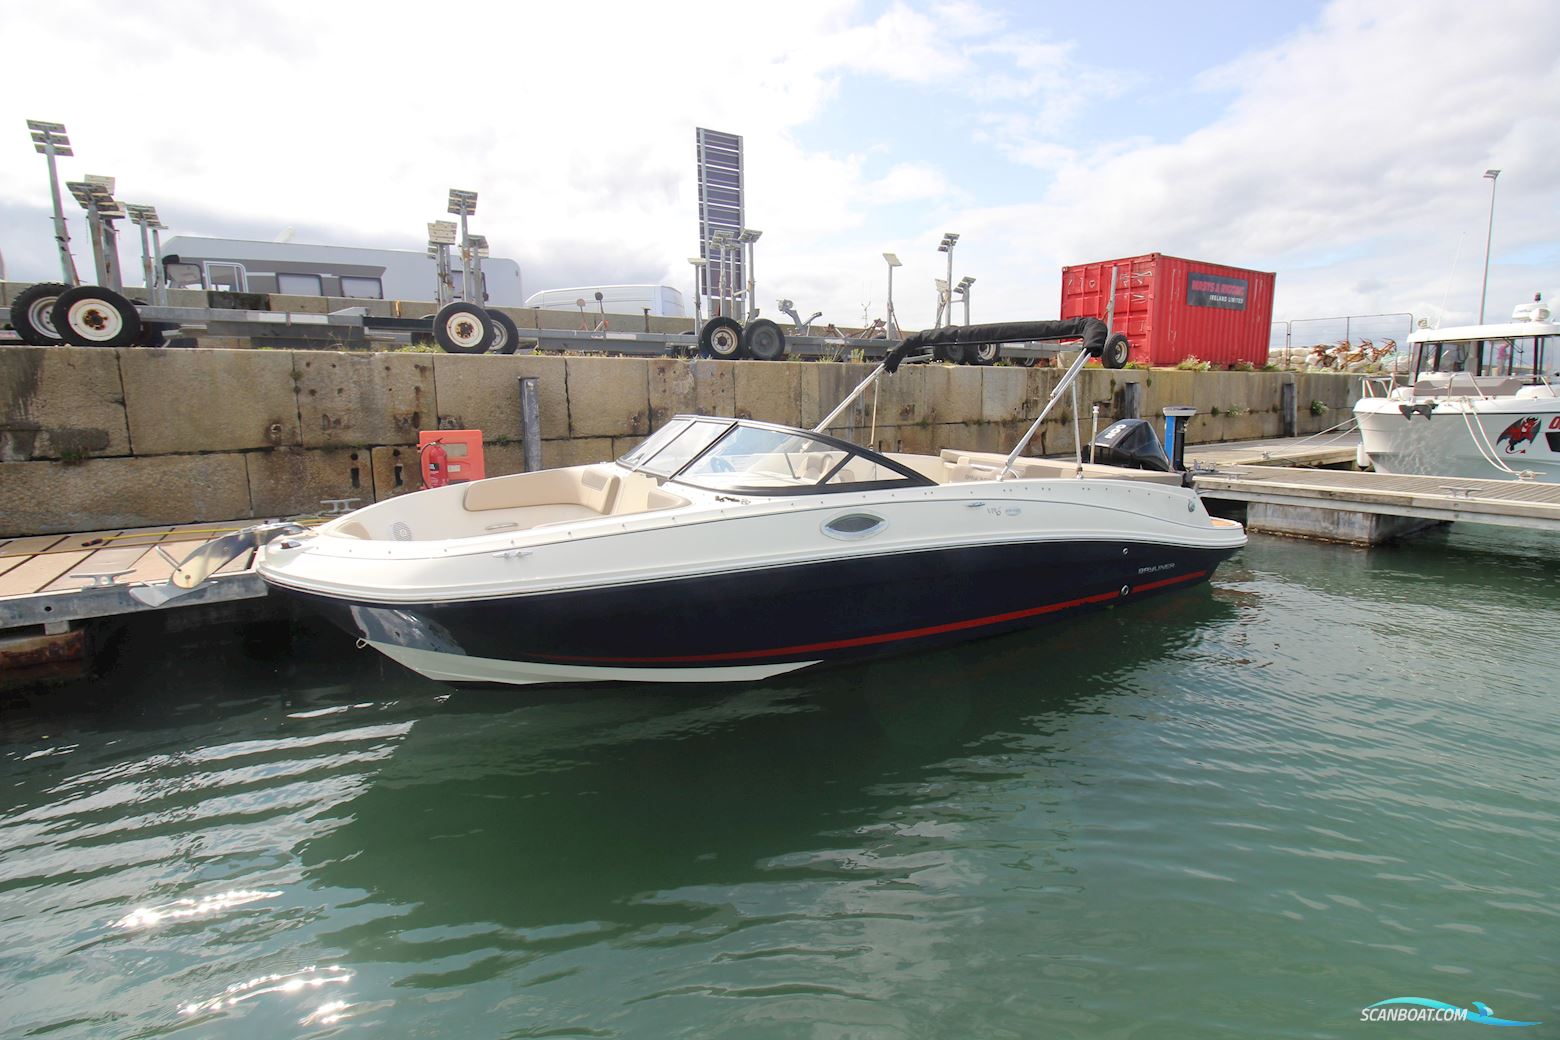 Bayliner VR6 Bowrider OB Motor boat 2020, with Mercury engine, Ireland